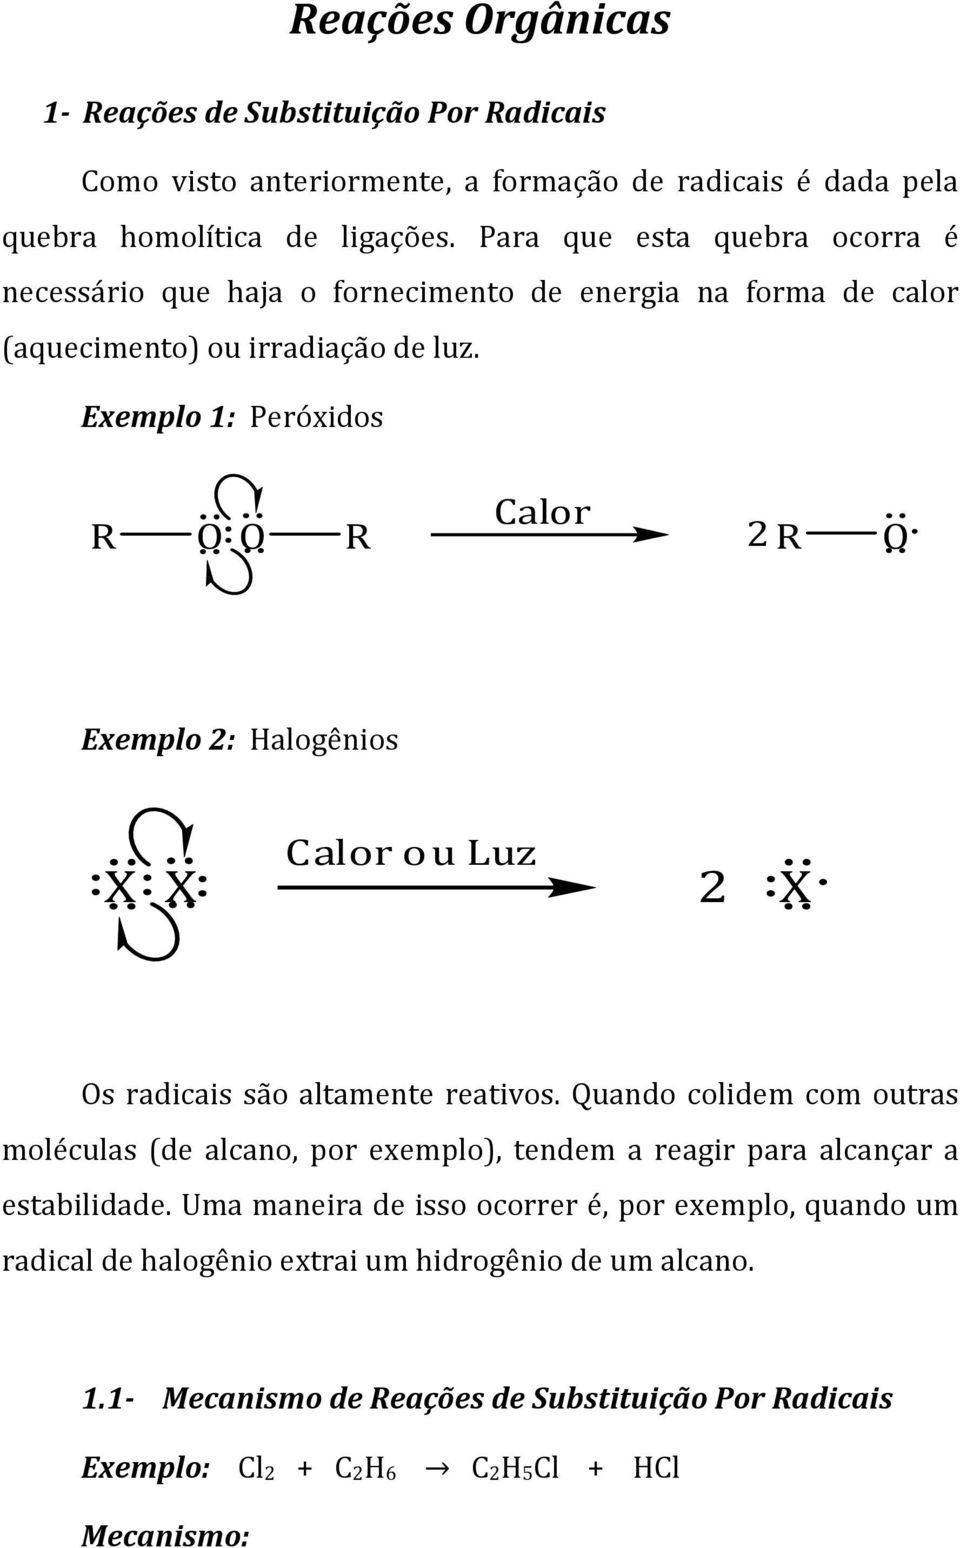 Exemplo 1: Peróxidos R O O R alor 2R O Exemplo 2: alogênios X X alorouluz 2 X Os radicais são altamente reativos.